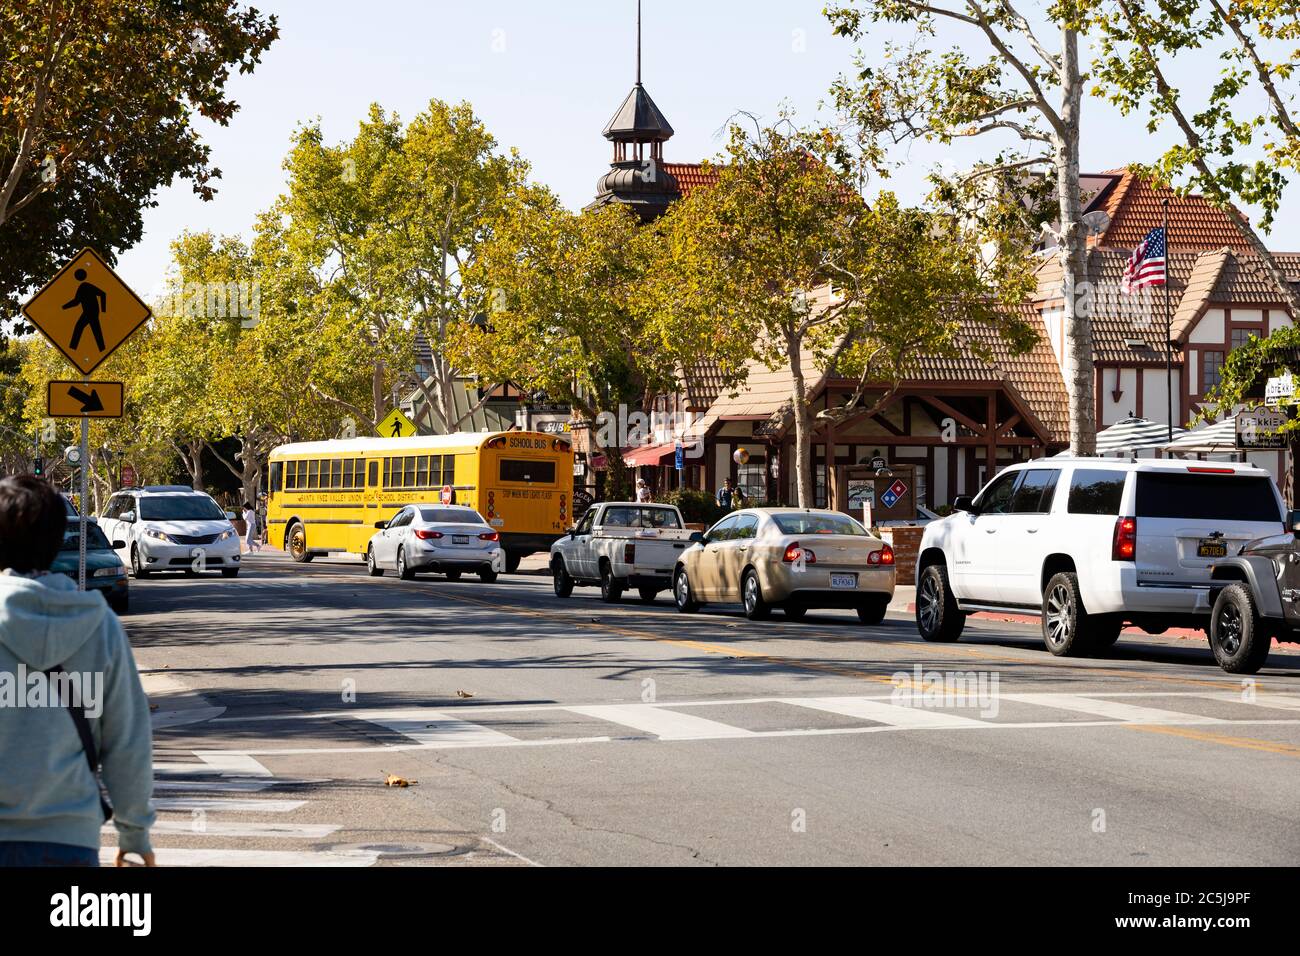 Main Street con traffico e bus scolastico. La comunità danese di Solvang, Ynez Valley, California, Stati Uniti d'America Foto Stock